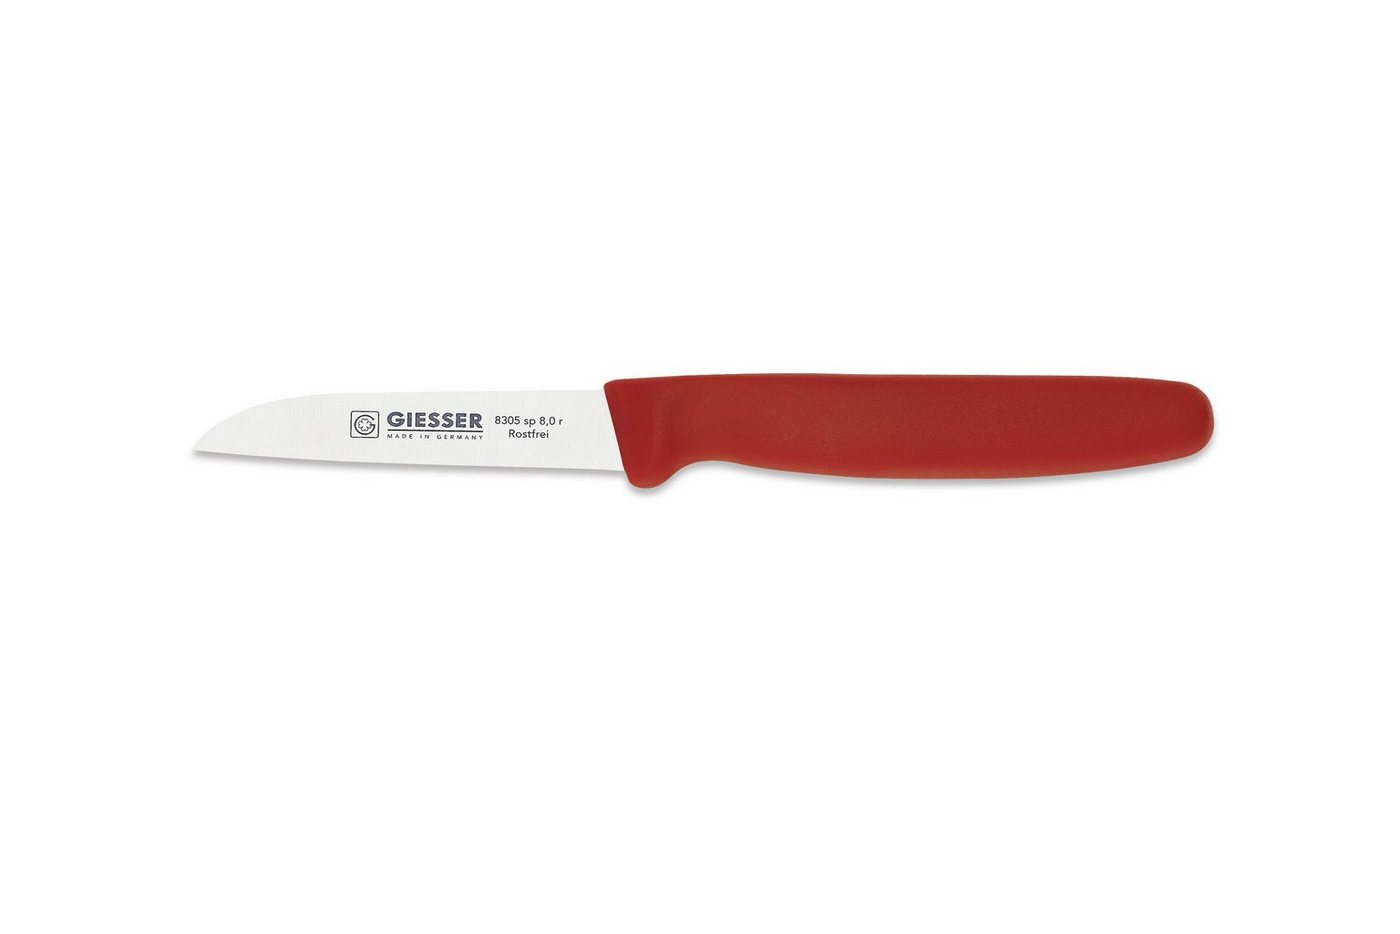 Giesser Messer Gemüsemesser Küchenmesser 8305 sp 8 alle Farben, Küchenmesser gerade Schneide 8 cm, Made in Germany von Giesser Messer